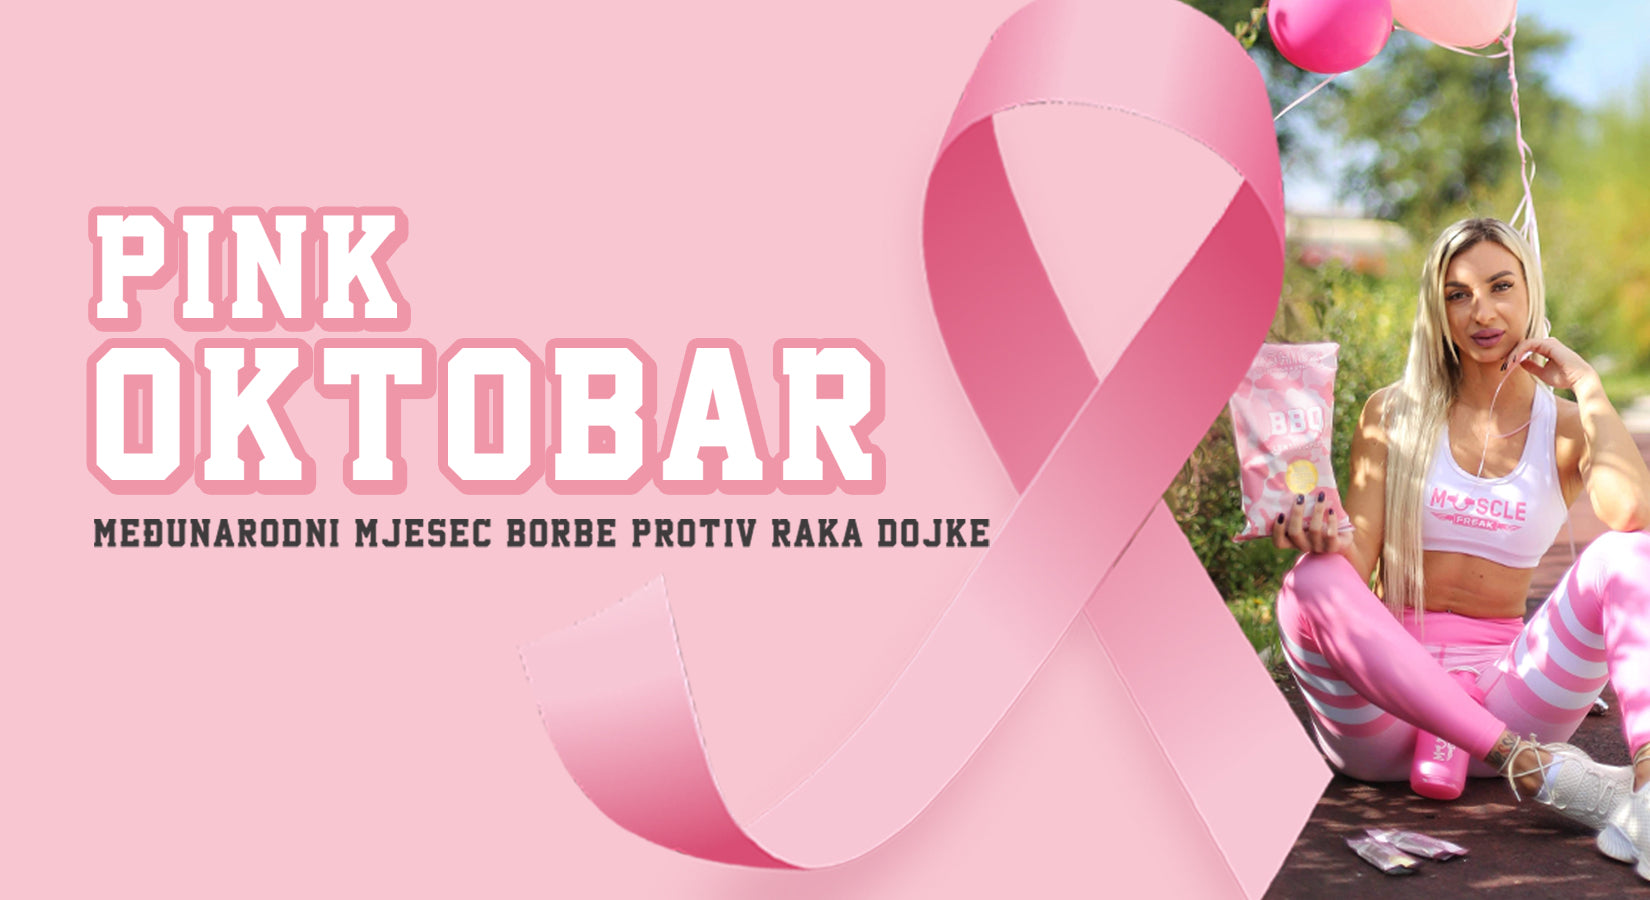 Oktobar, Međunarodni mjesec borbe protiv raka dojke